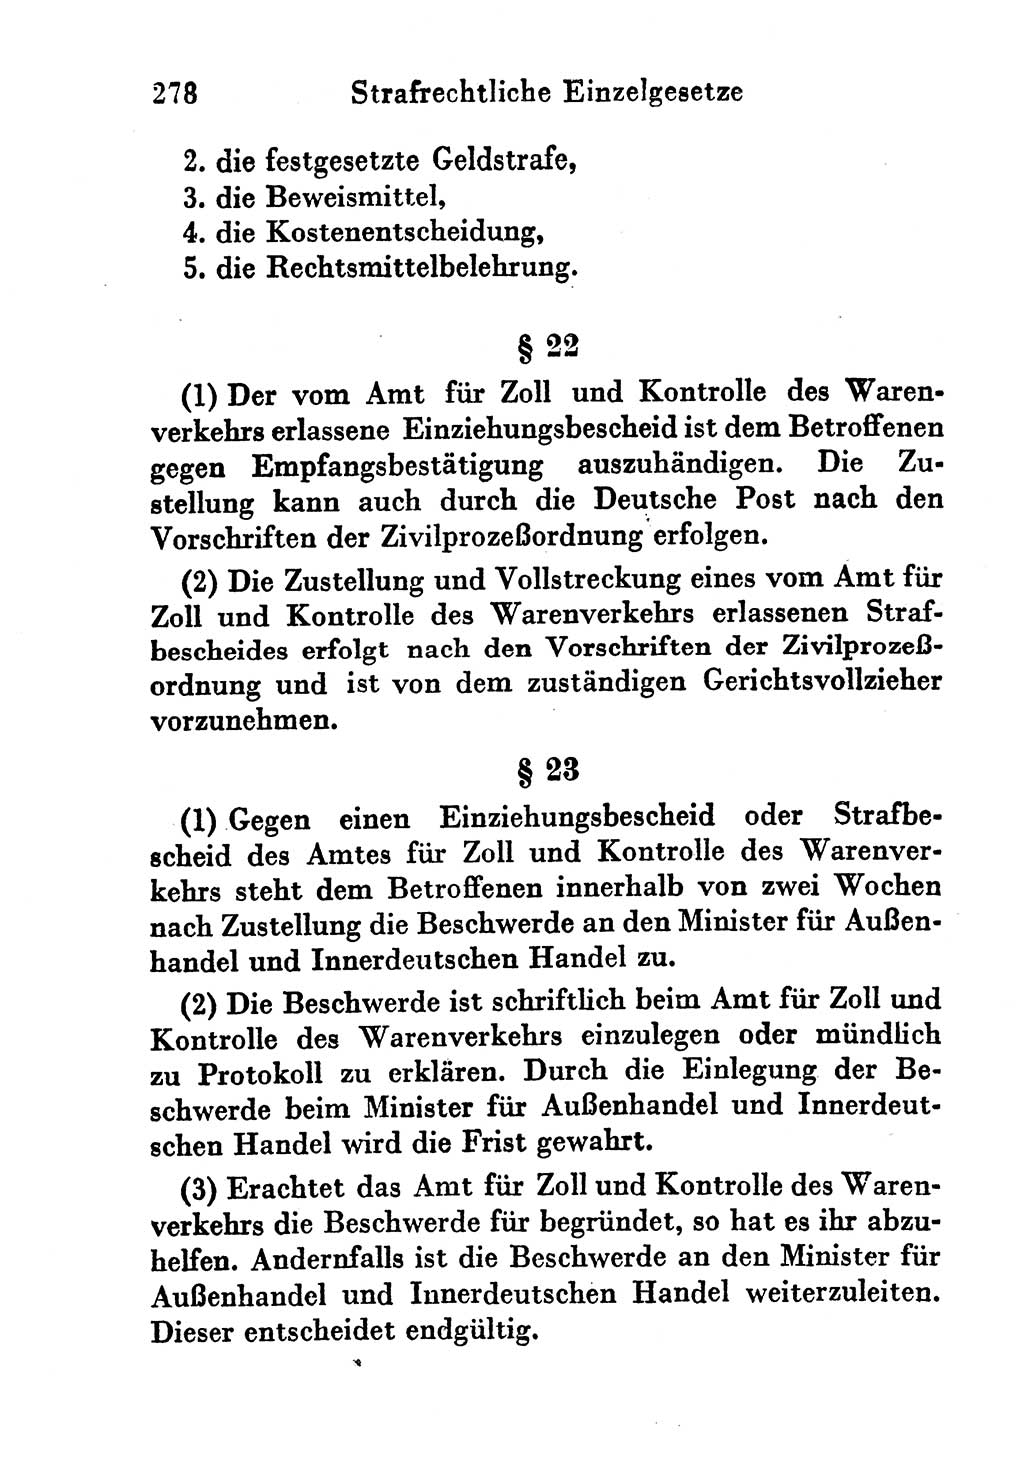 Strafgesetzbuch (StGB) und andere Strafgesetze [Deutsche Demokratische Republik (DDR)] 1956, Seite 278 (StGB Strafges. DDR 1956, S. 278)